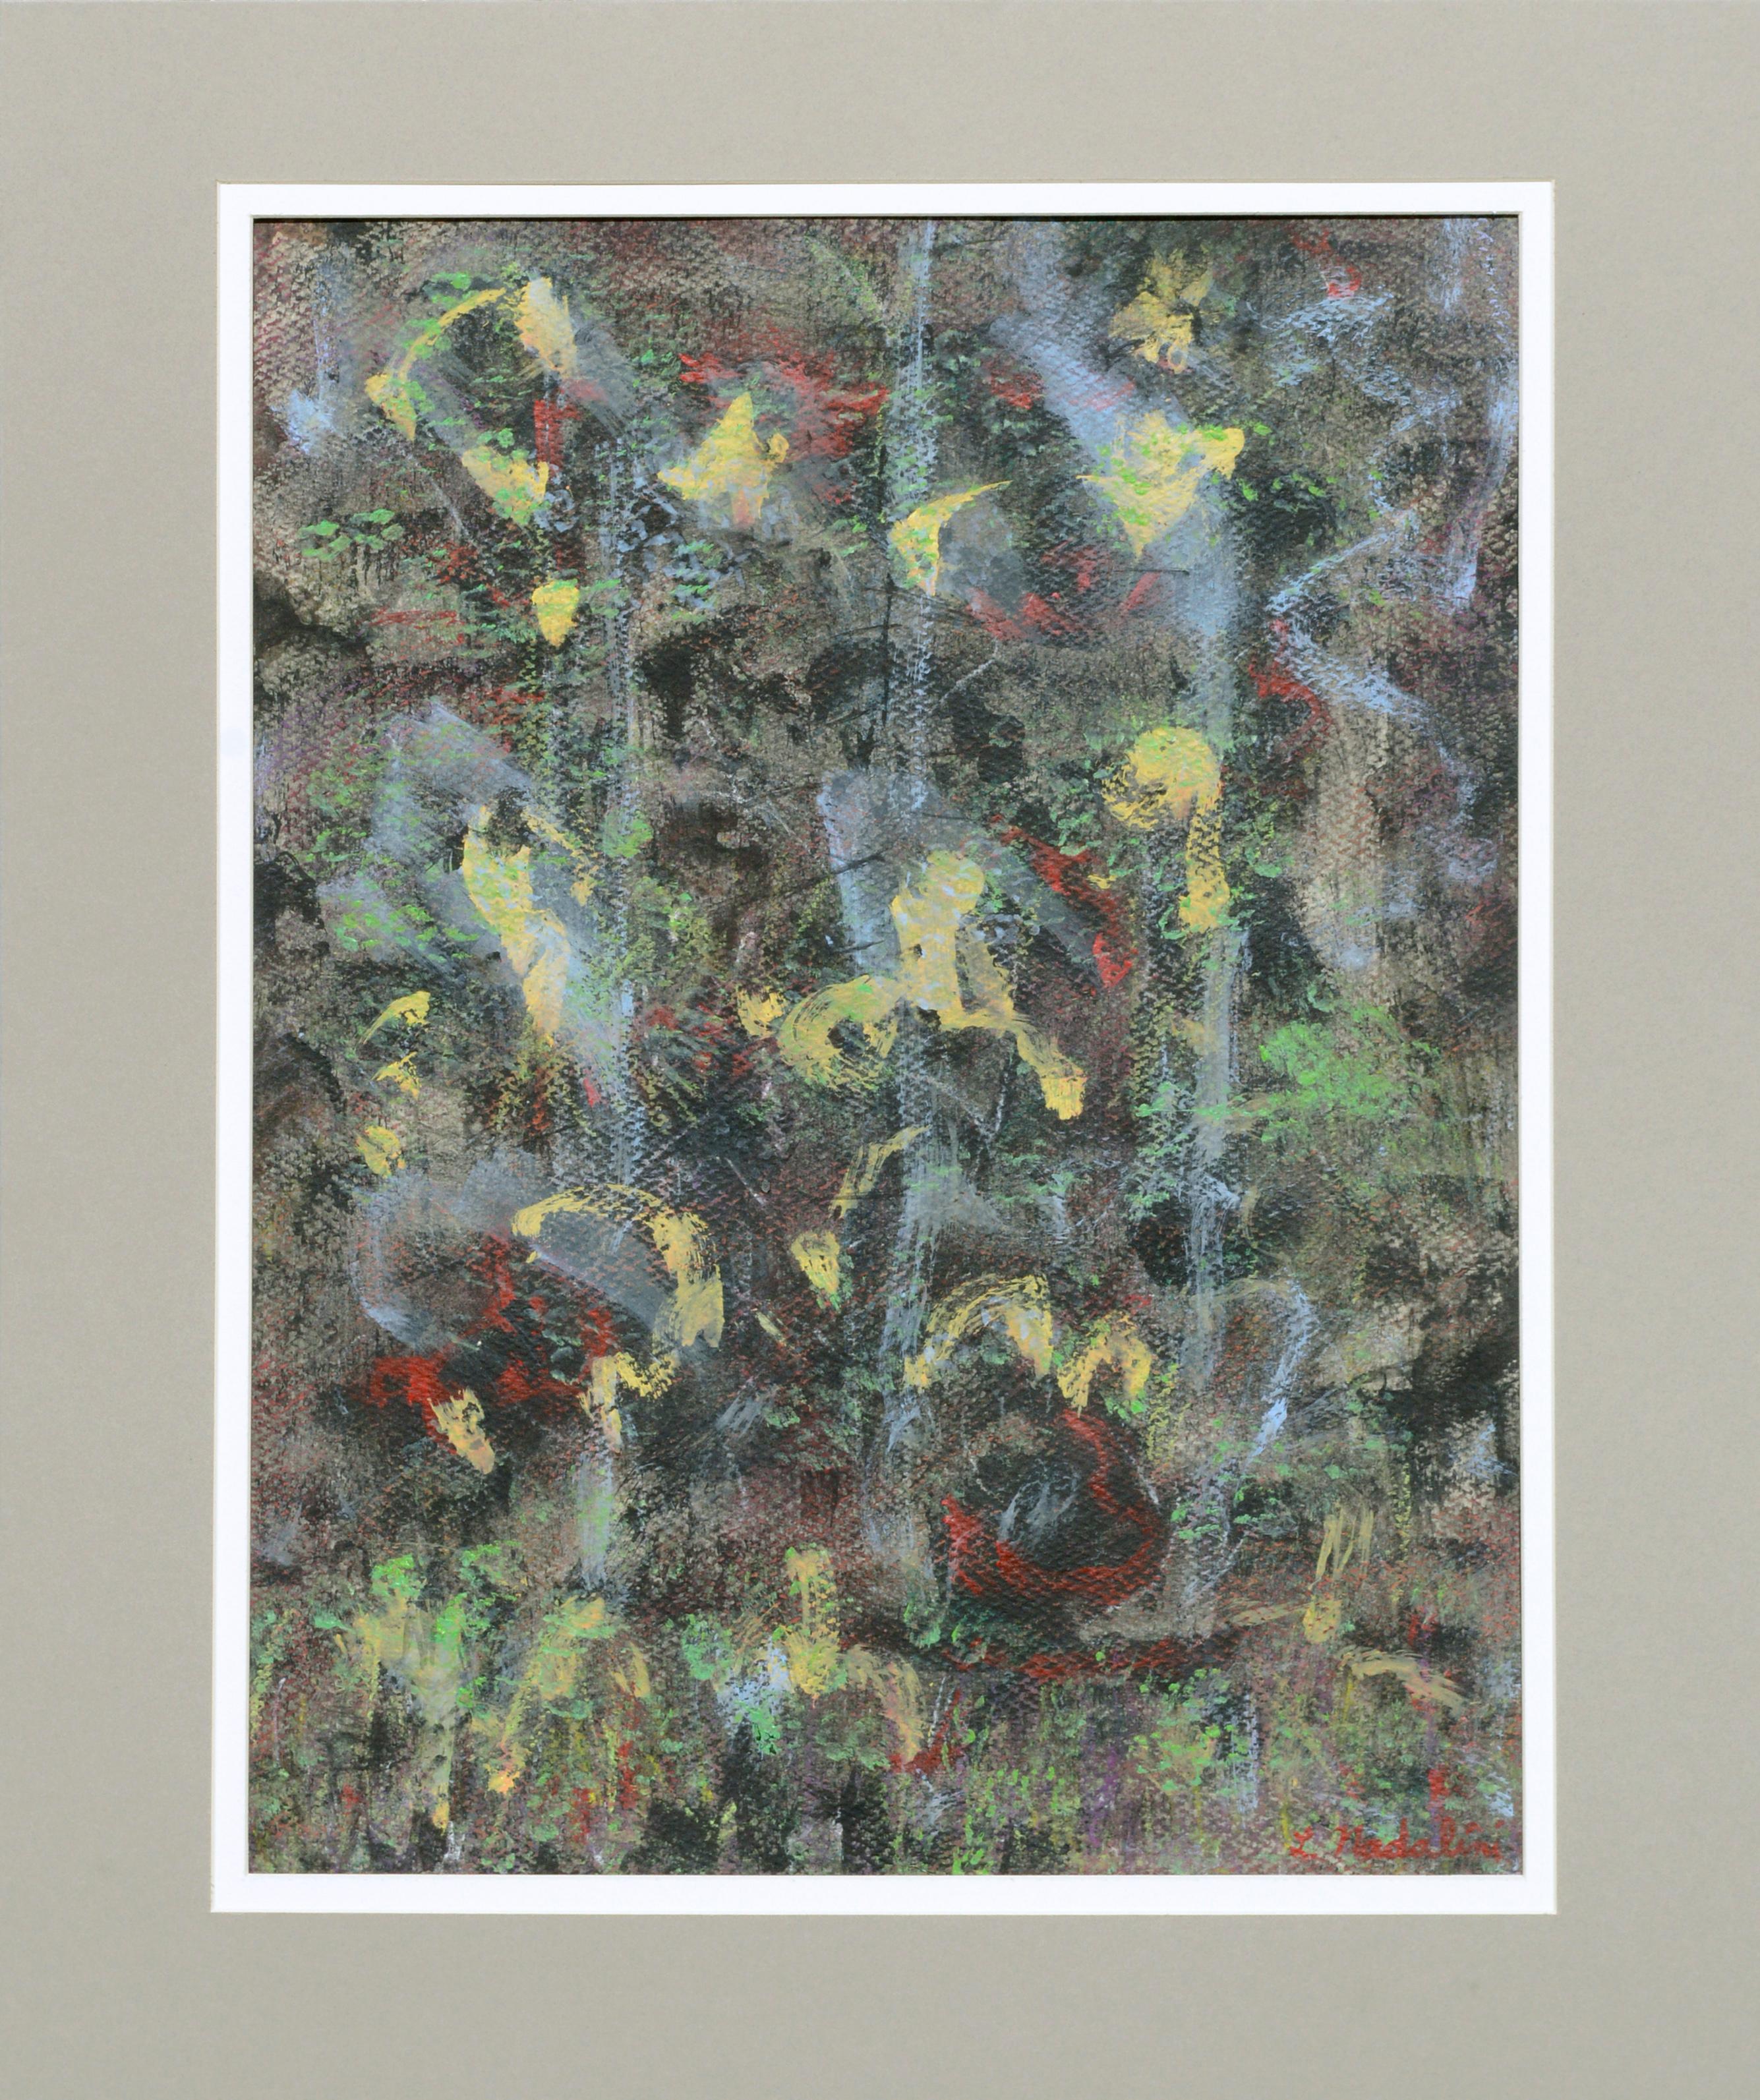 Abstrakte expressionistische Komposition mit Primärfarben, Berkeley, Kalifornien, 1970er Jahre